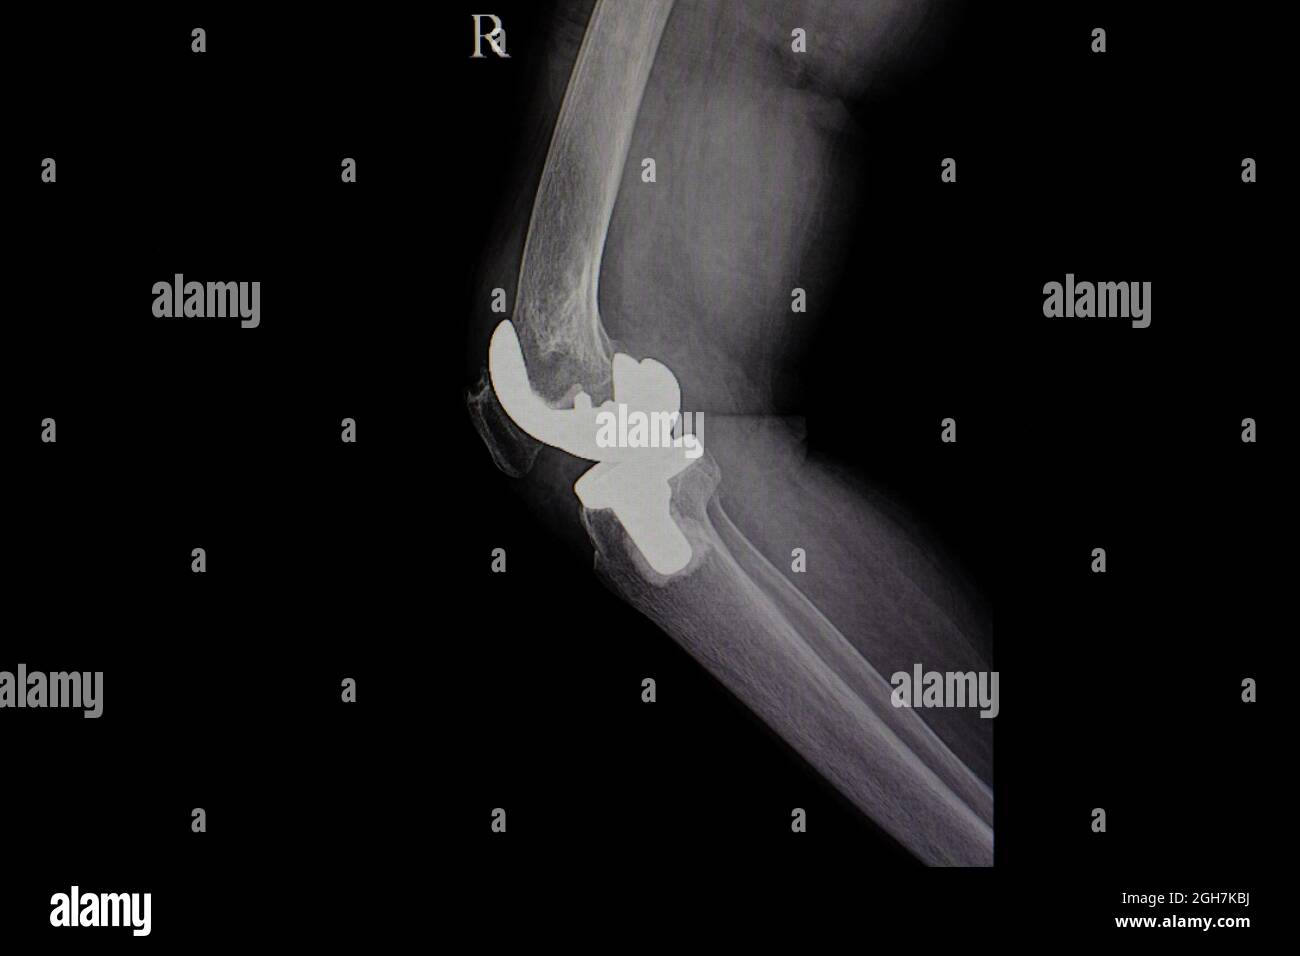 Xray film of human knee with titanium knee prosthesis Stock Photo